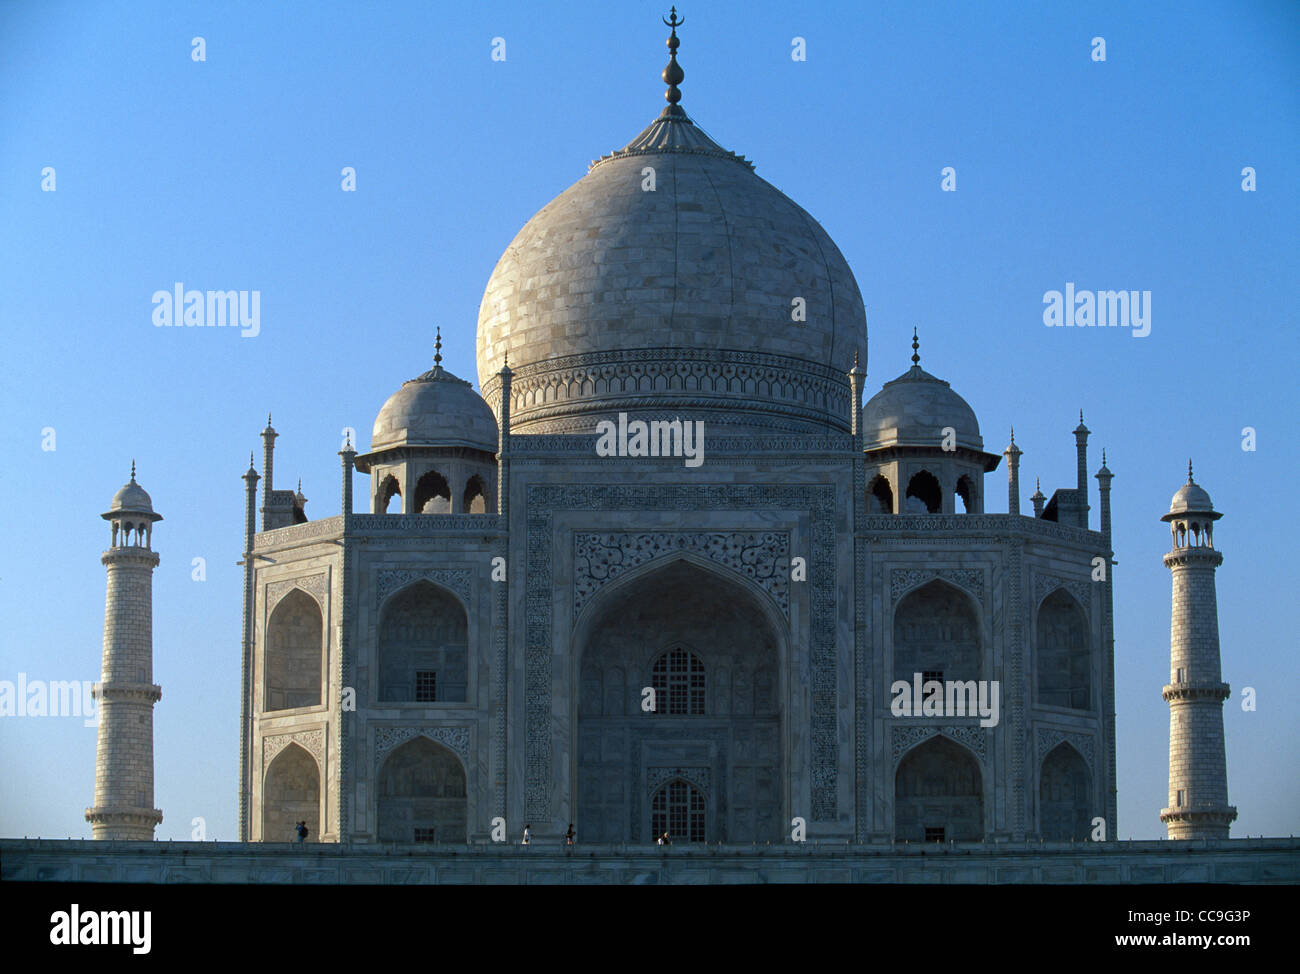 Un ciel bleu enveloppe le Taj Mahal à Agra, Inde. Construit en 1653 par l'empereur Moghol Shah Jahan en mémoire de sa troisième femme. Banque D'Images